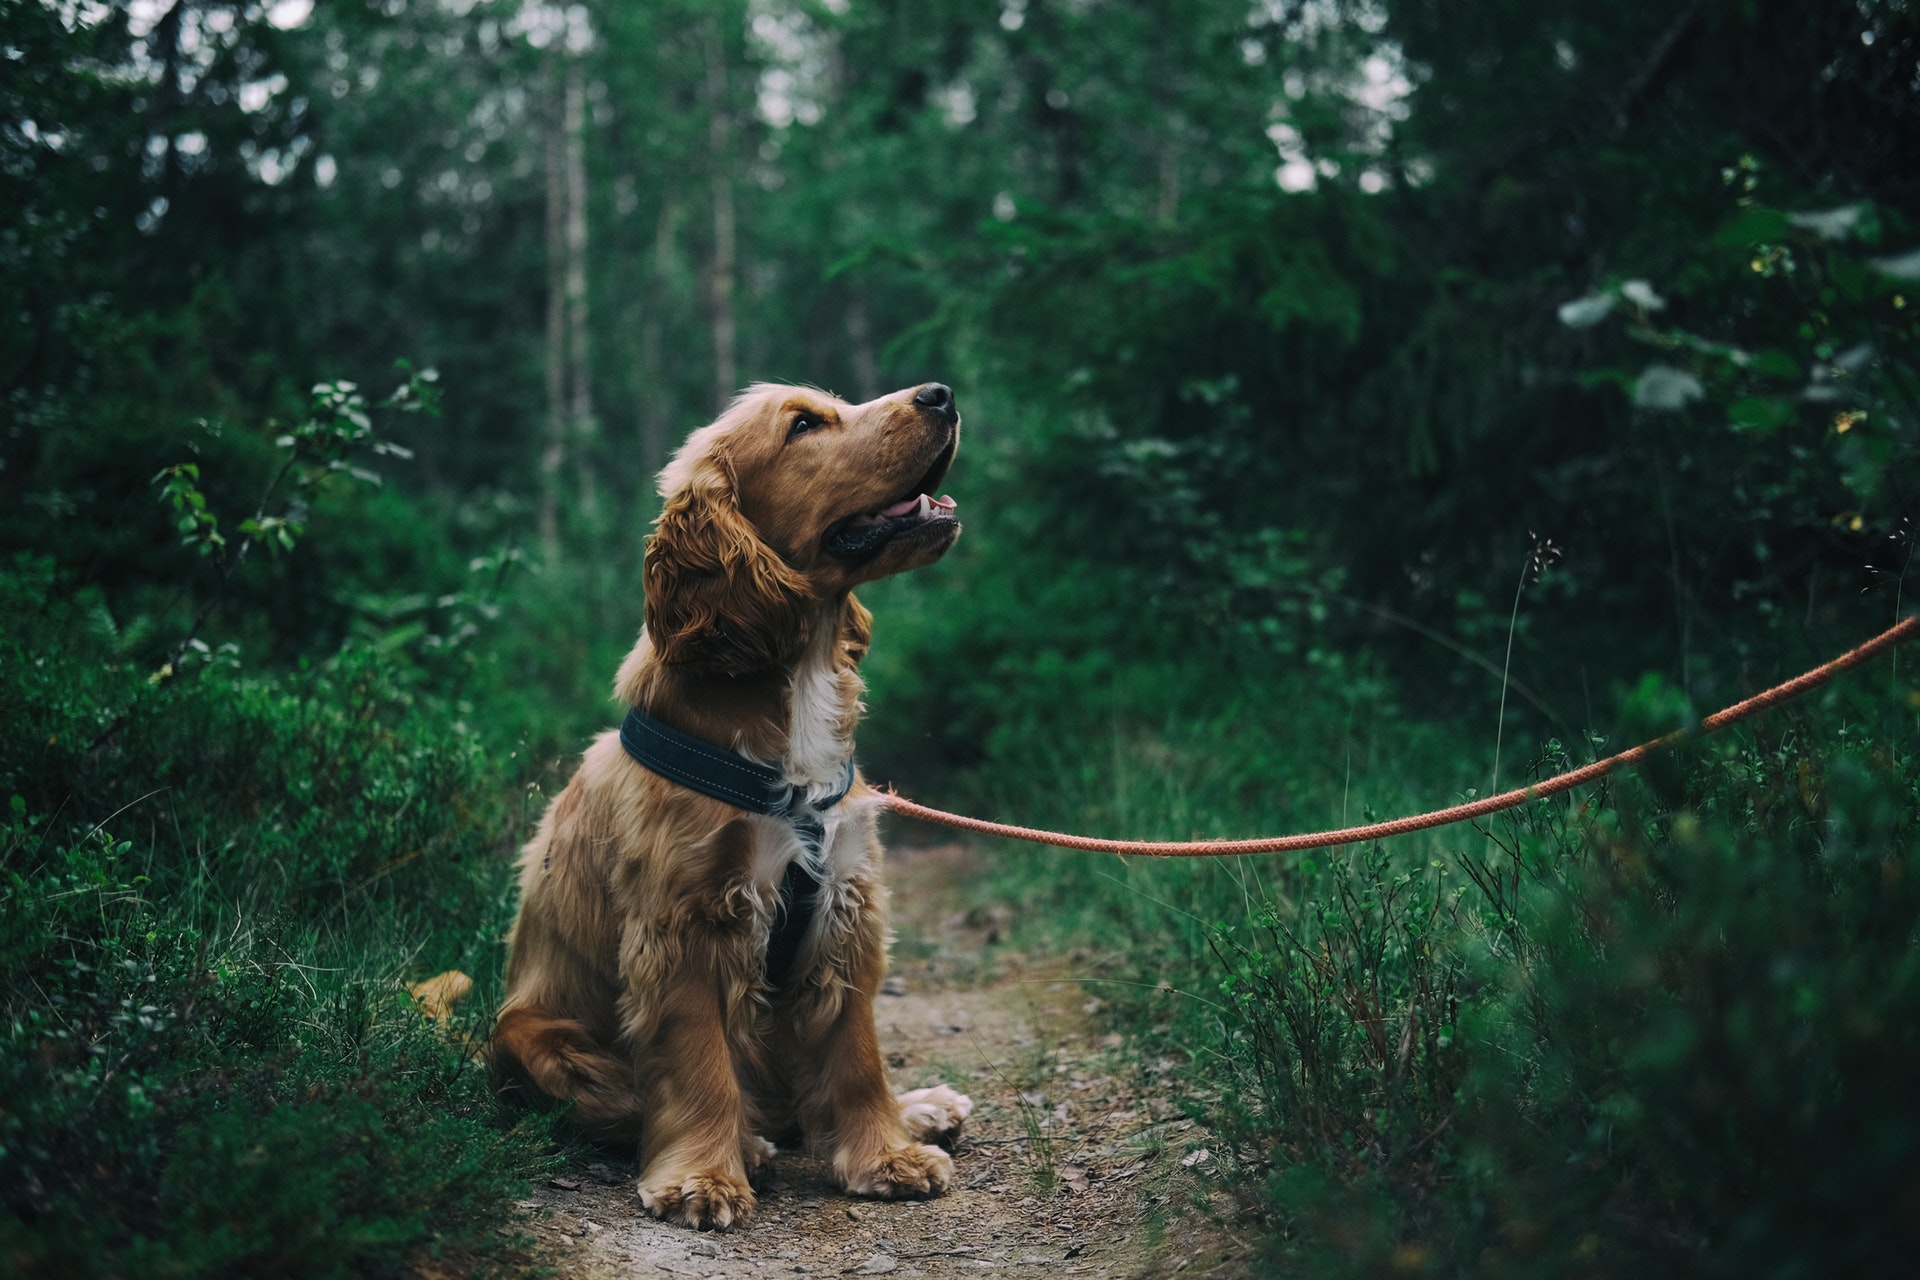 Dog on a leash showing dog body language